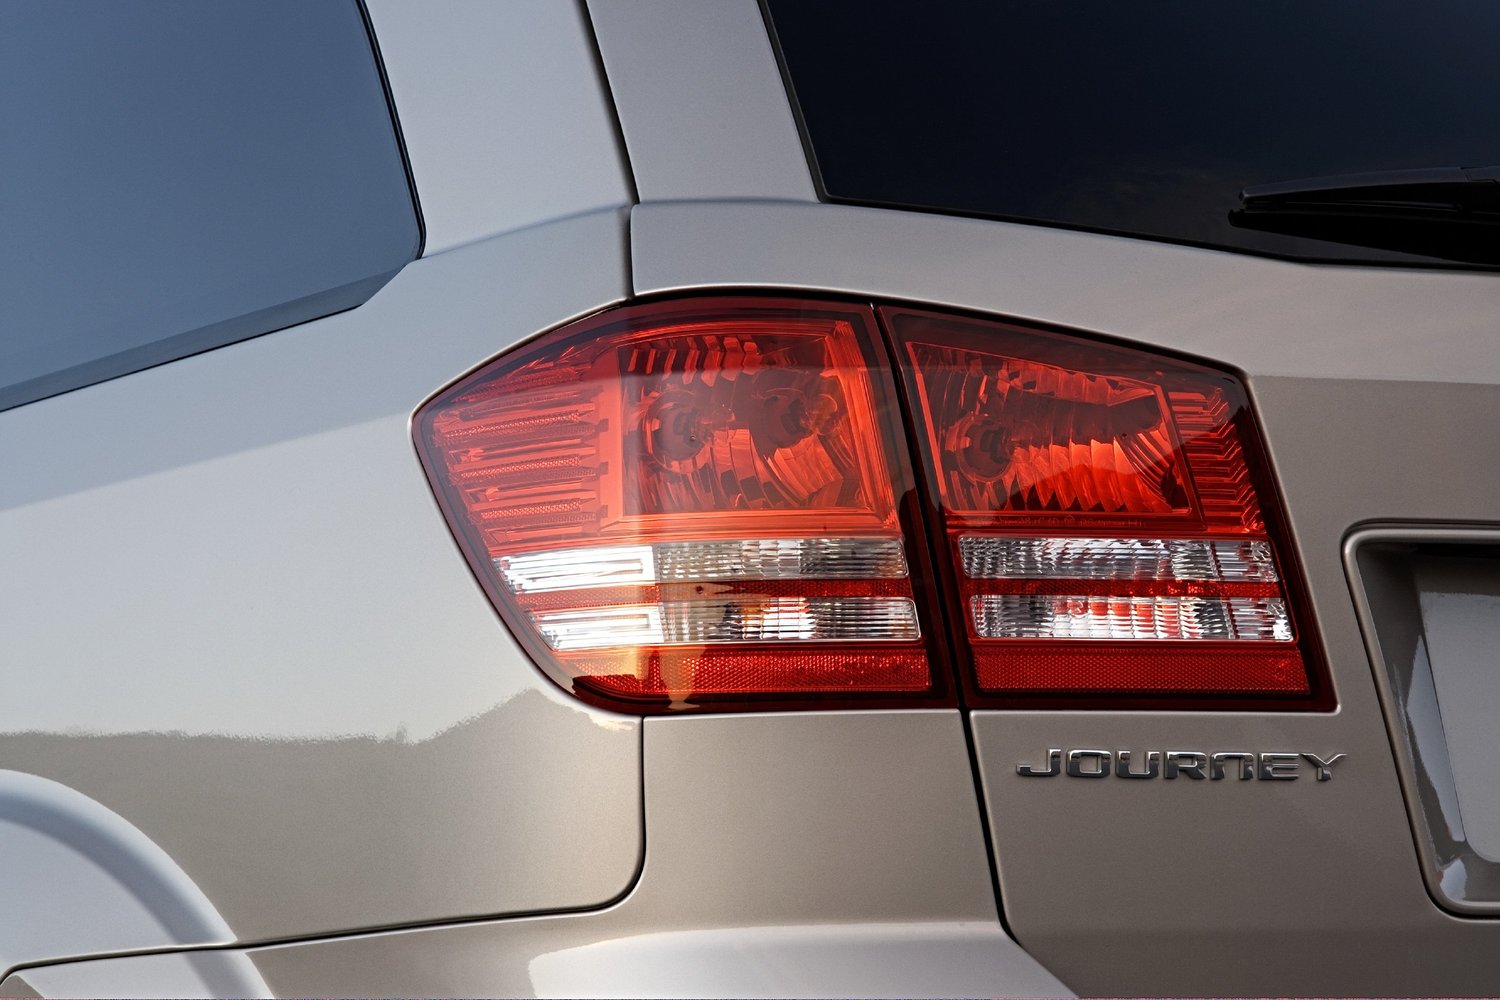 кроссовер Dodge Journey 2008 - 2016г выпуска модификация 3.5 AT (235 л.с.)